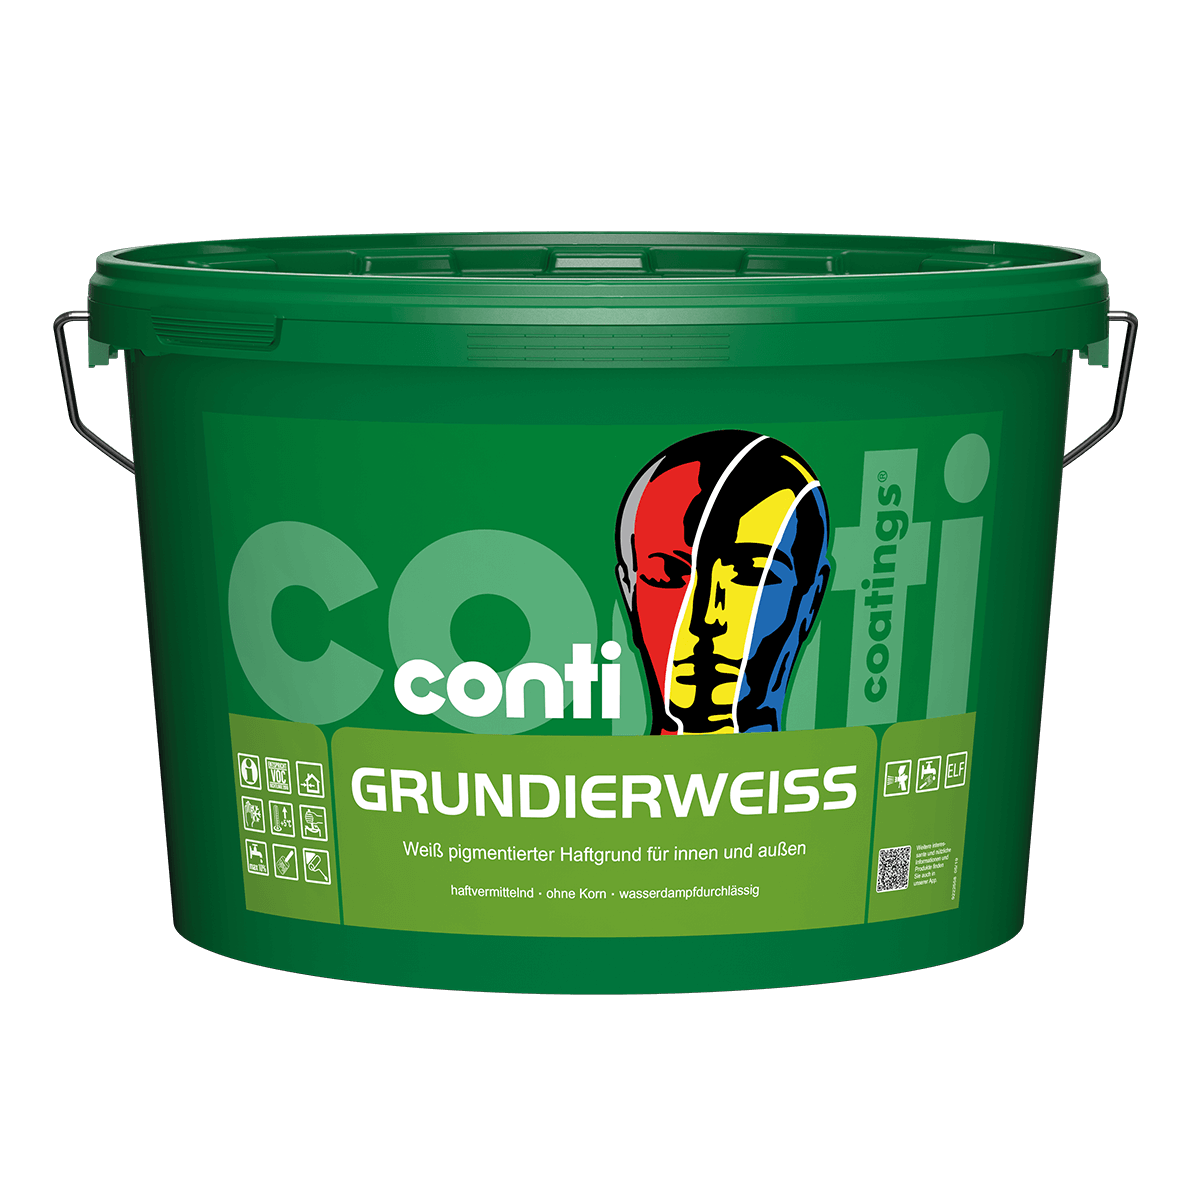 Conti® Grundierweiß Haftgrund von conti coatings